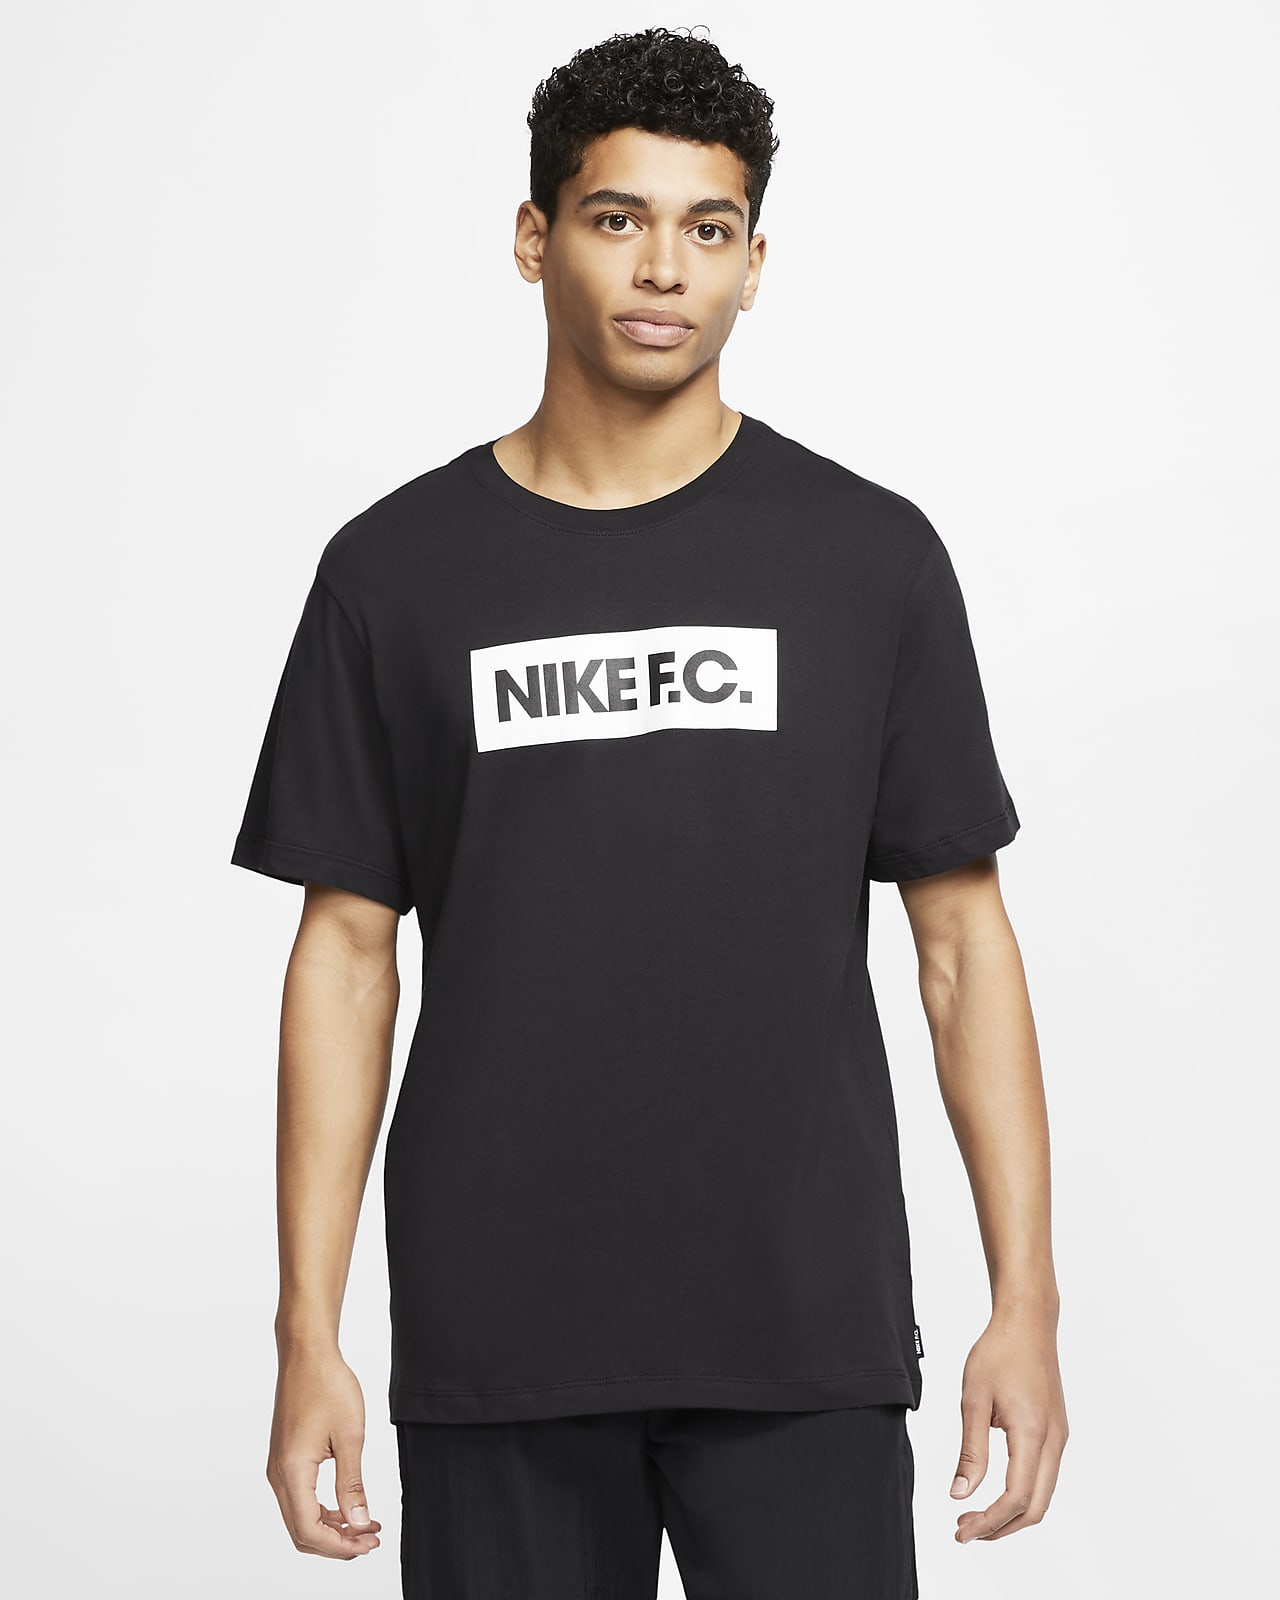 Nike F.C. SE11 Men's Football T-Shirt 